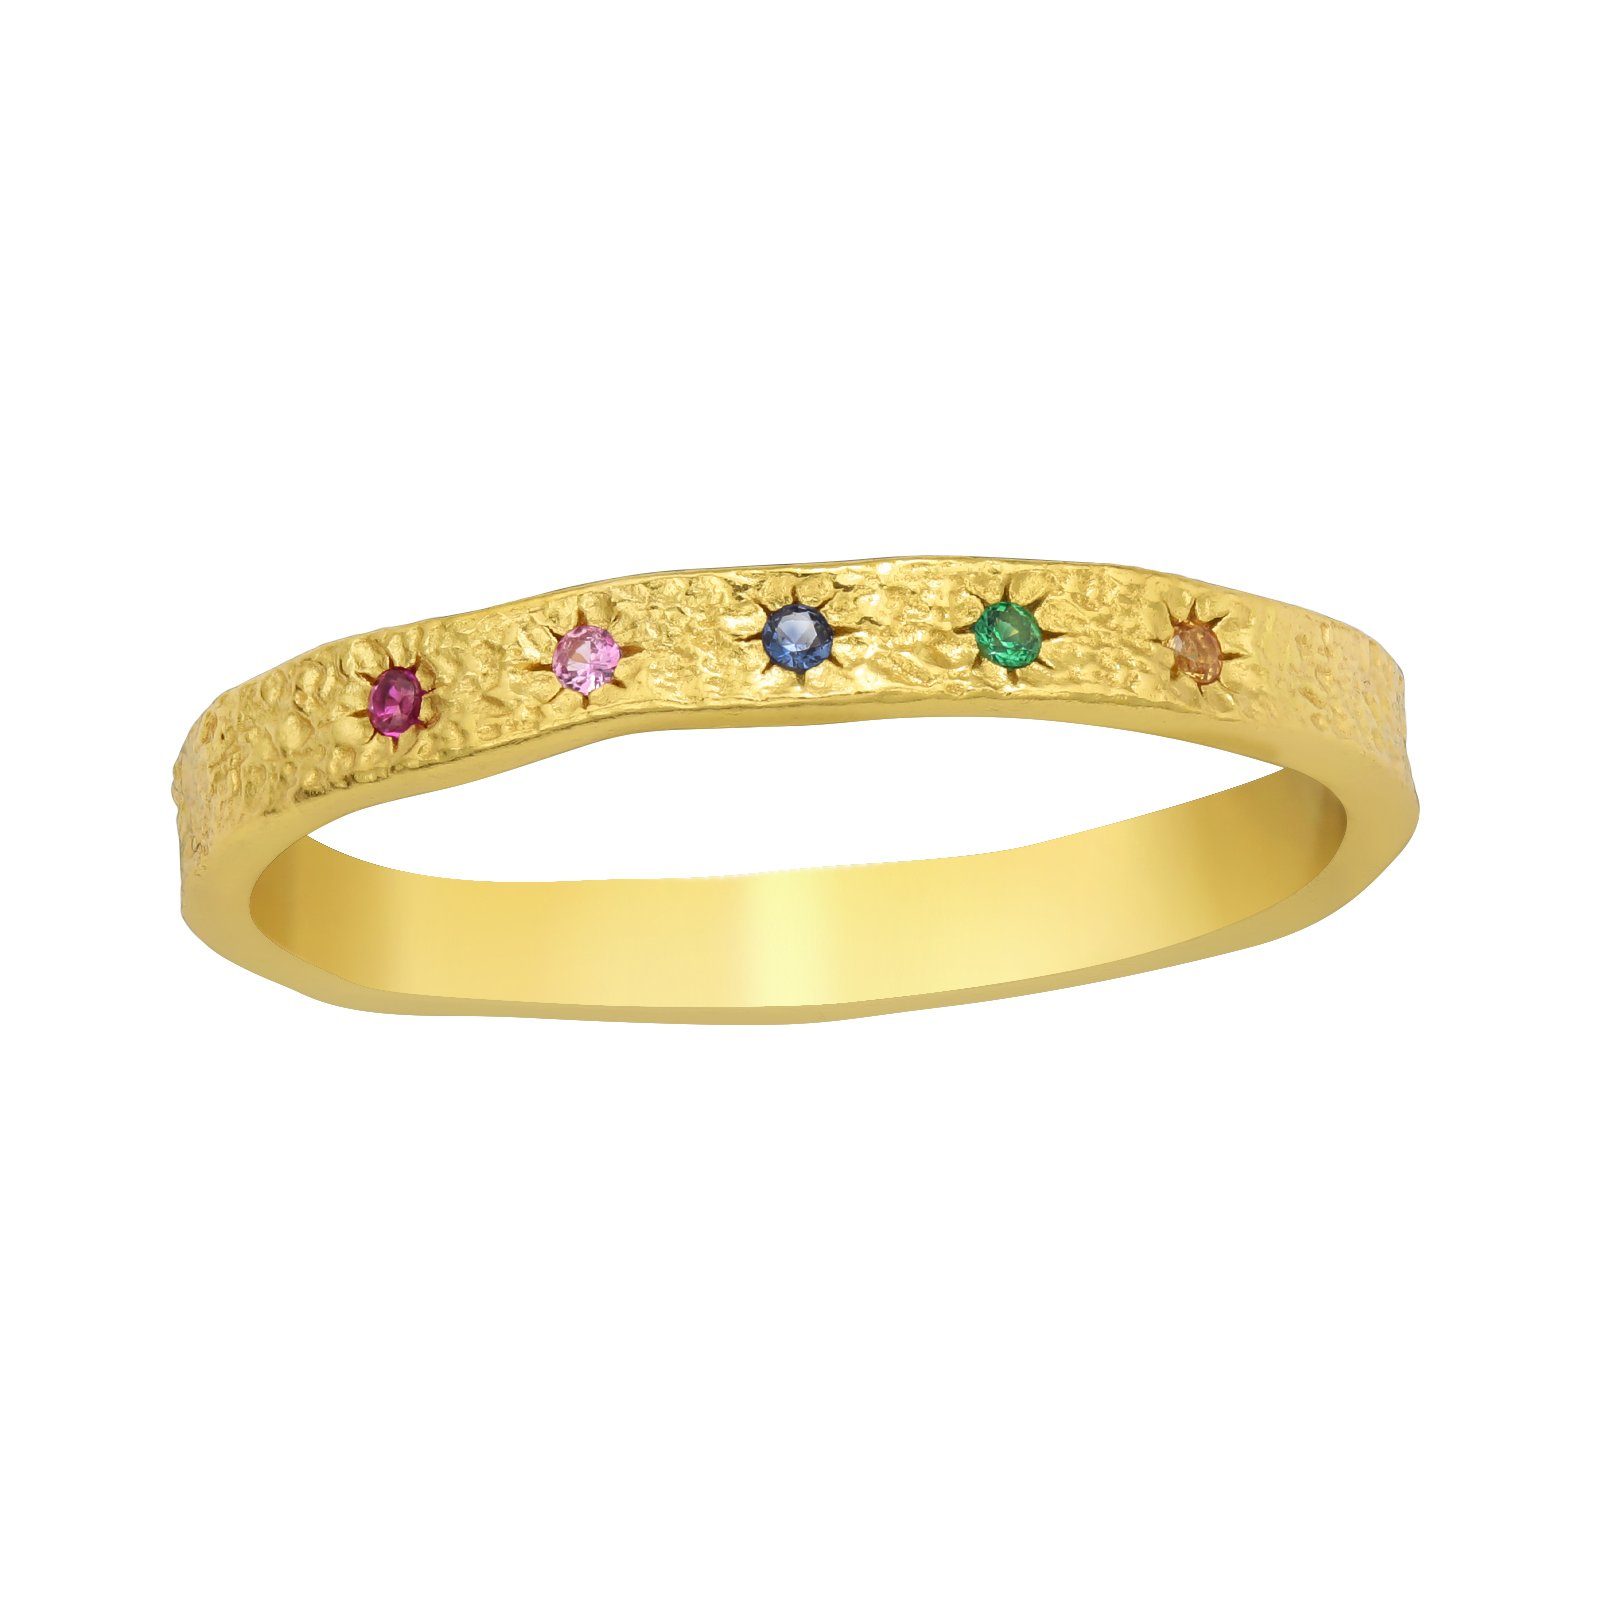 BUNGSA Fingerring Ring goldfarben mit bunten Steinchen aus 925 Silber Damen (1 Ring)